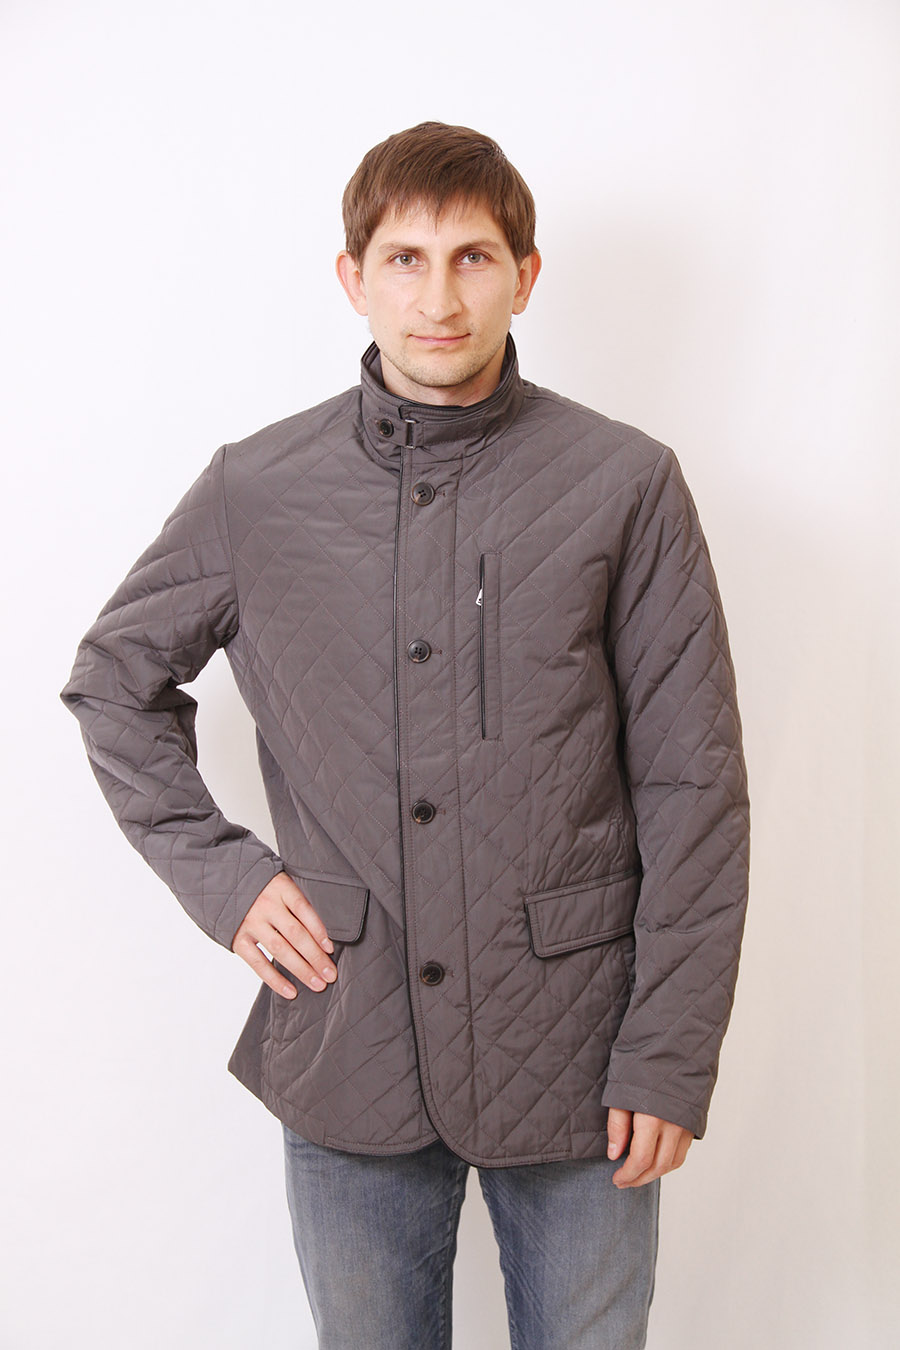 Мужская куртка-пиджак (Snowimage)